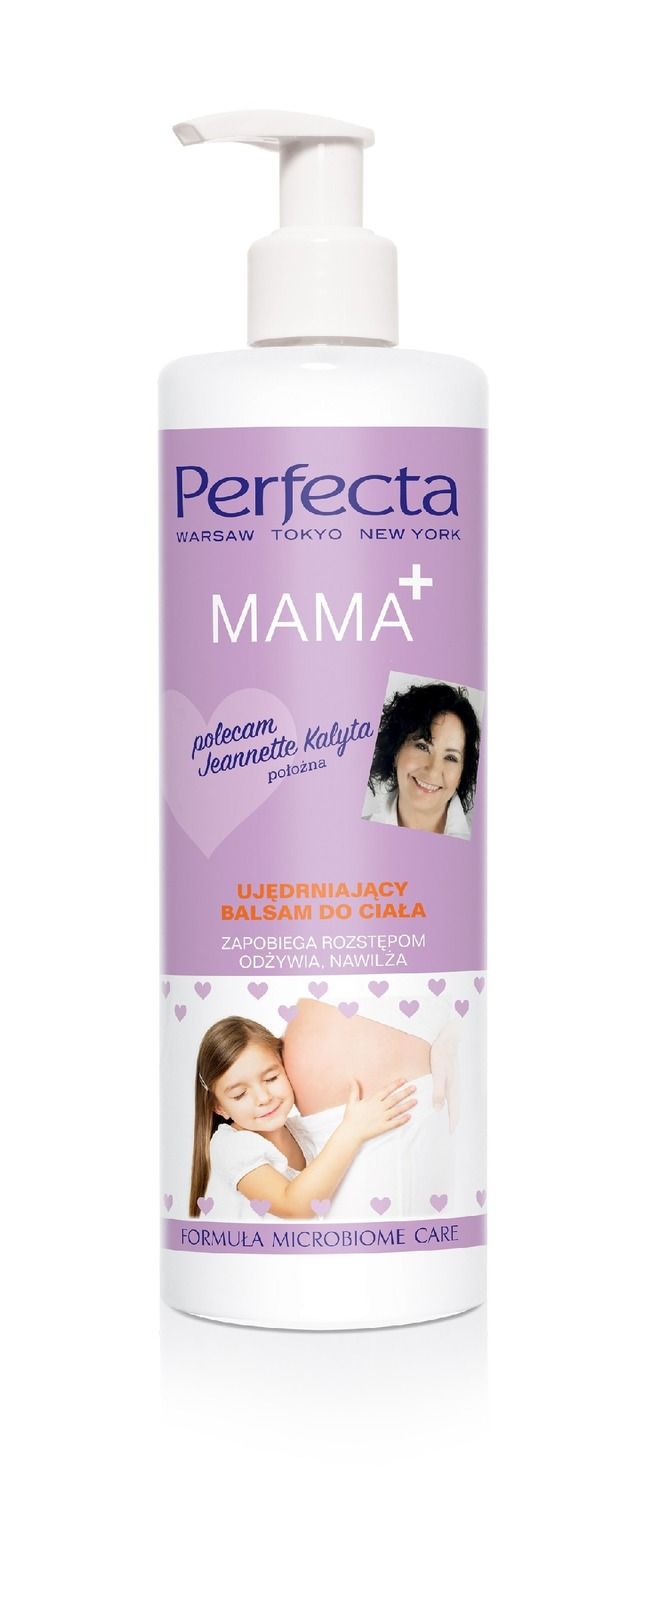 Perfecta Mama + balsam do ciała, ujędrniający, 400 ml